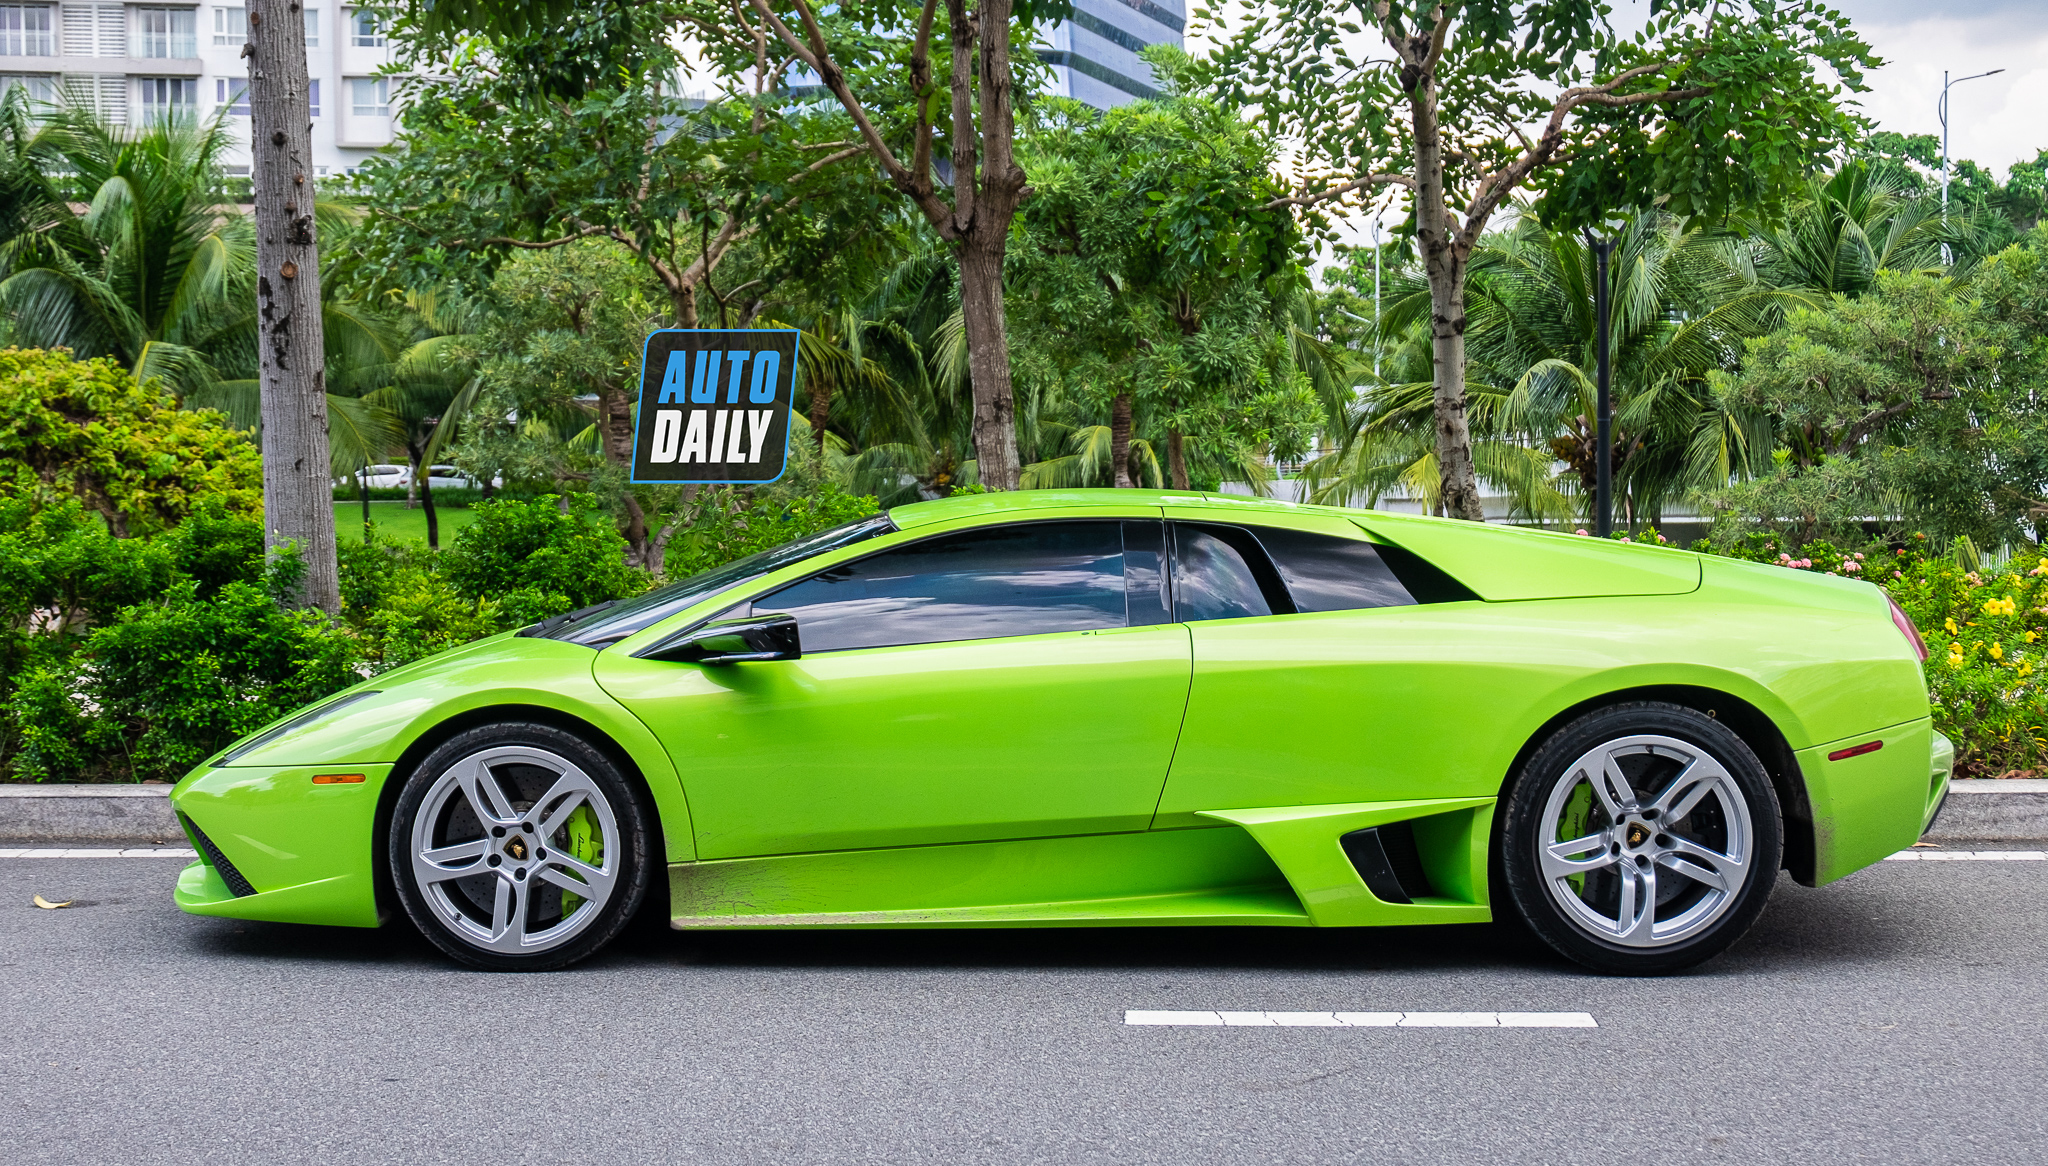 Lamborghini Murcielago xanh cốm độc nhất Việt Nam bất ngờ tái xuất trên phố lamborghini-murcielago-xanh-com-autodaily-5.JPG